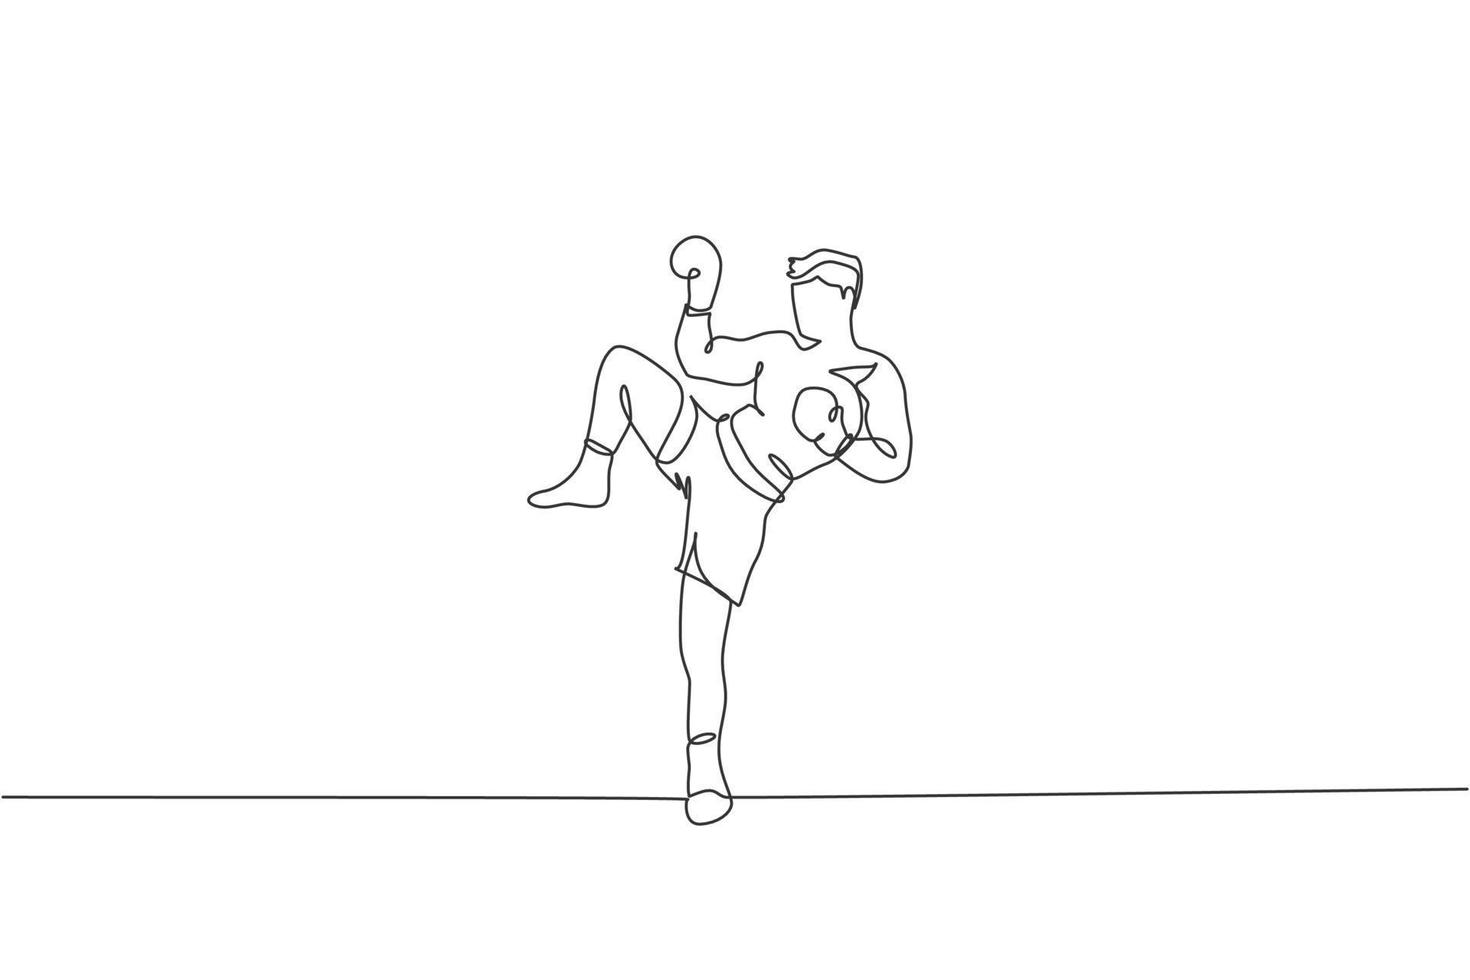 eine durchgehende strichzeichnung des jungen sportlichen muay thai boxermannes, der sich auf den kampf vorbereitet, haltungstritt in der boxarena. Kampfsport-Spielkonzept. dynamische Single-Line-Draw-Design-Vektorillustrationsgrafik vektor